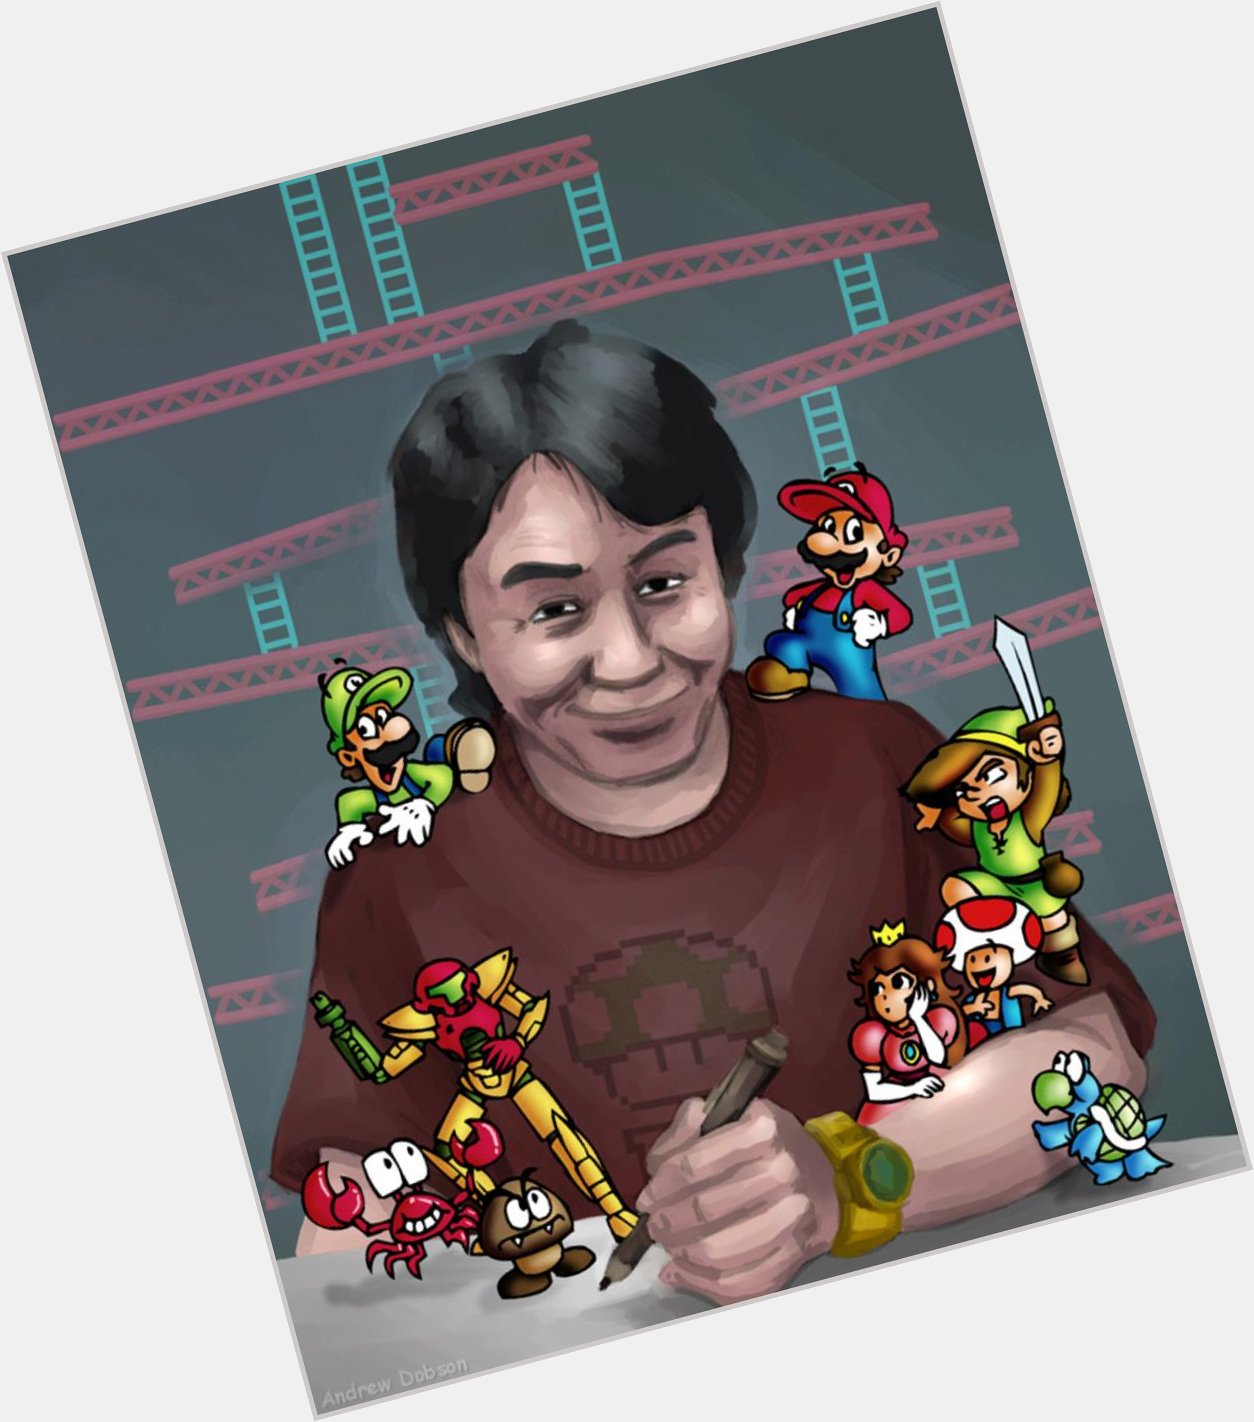 Happy Birthday to Shigeru Miyamoto who turned 62 today. 